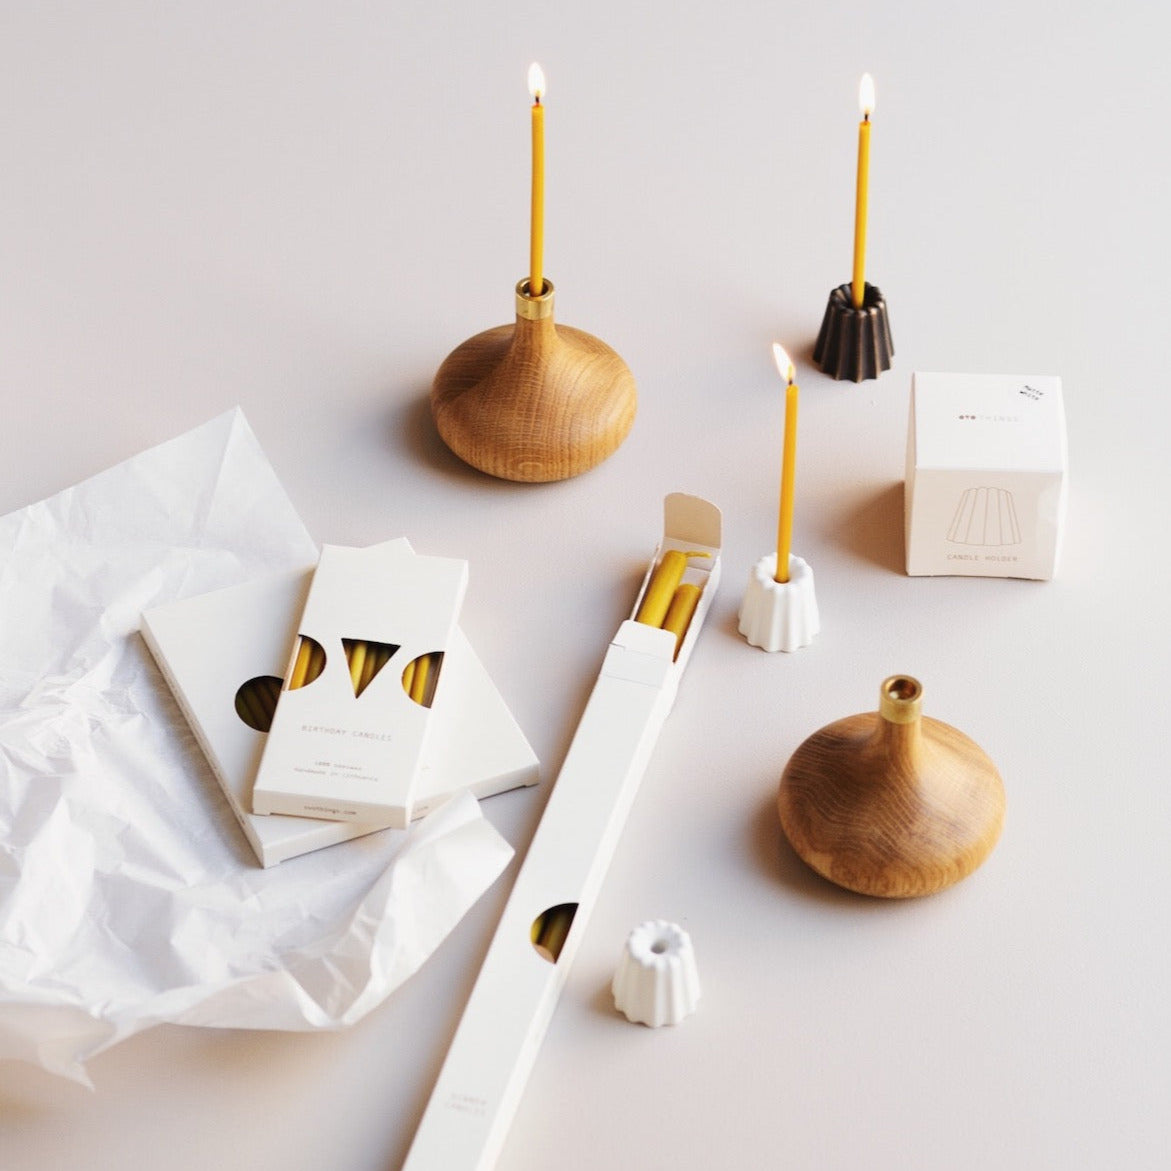 Kerzen aus Bienenwachs Birthday mini Candles | OVO THINGS | Made in Litauen